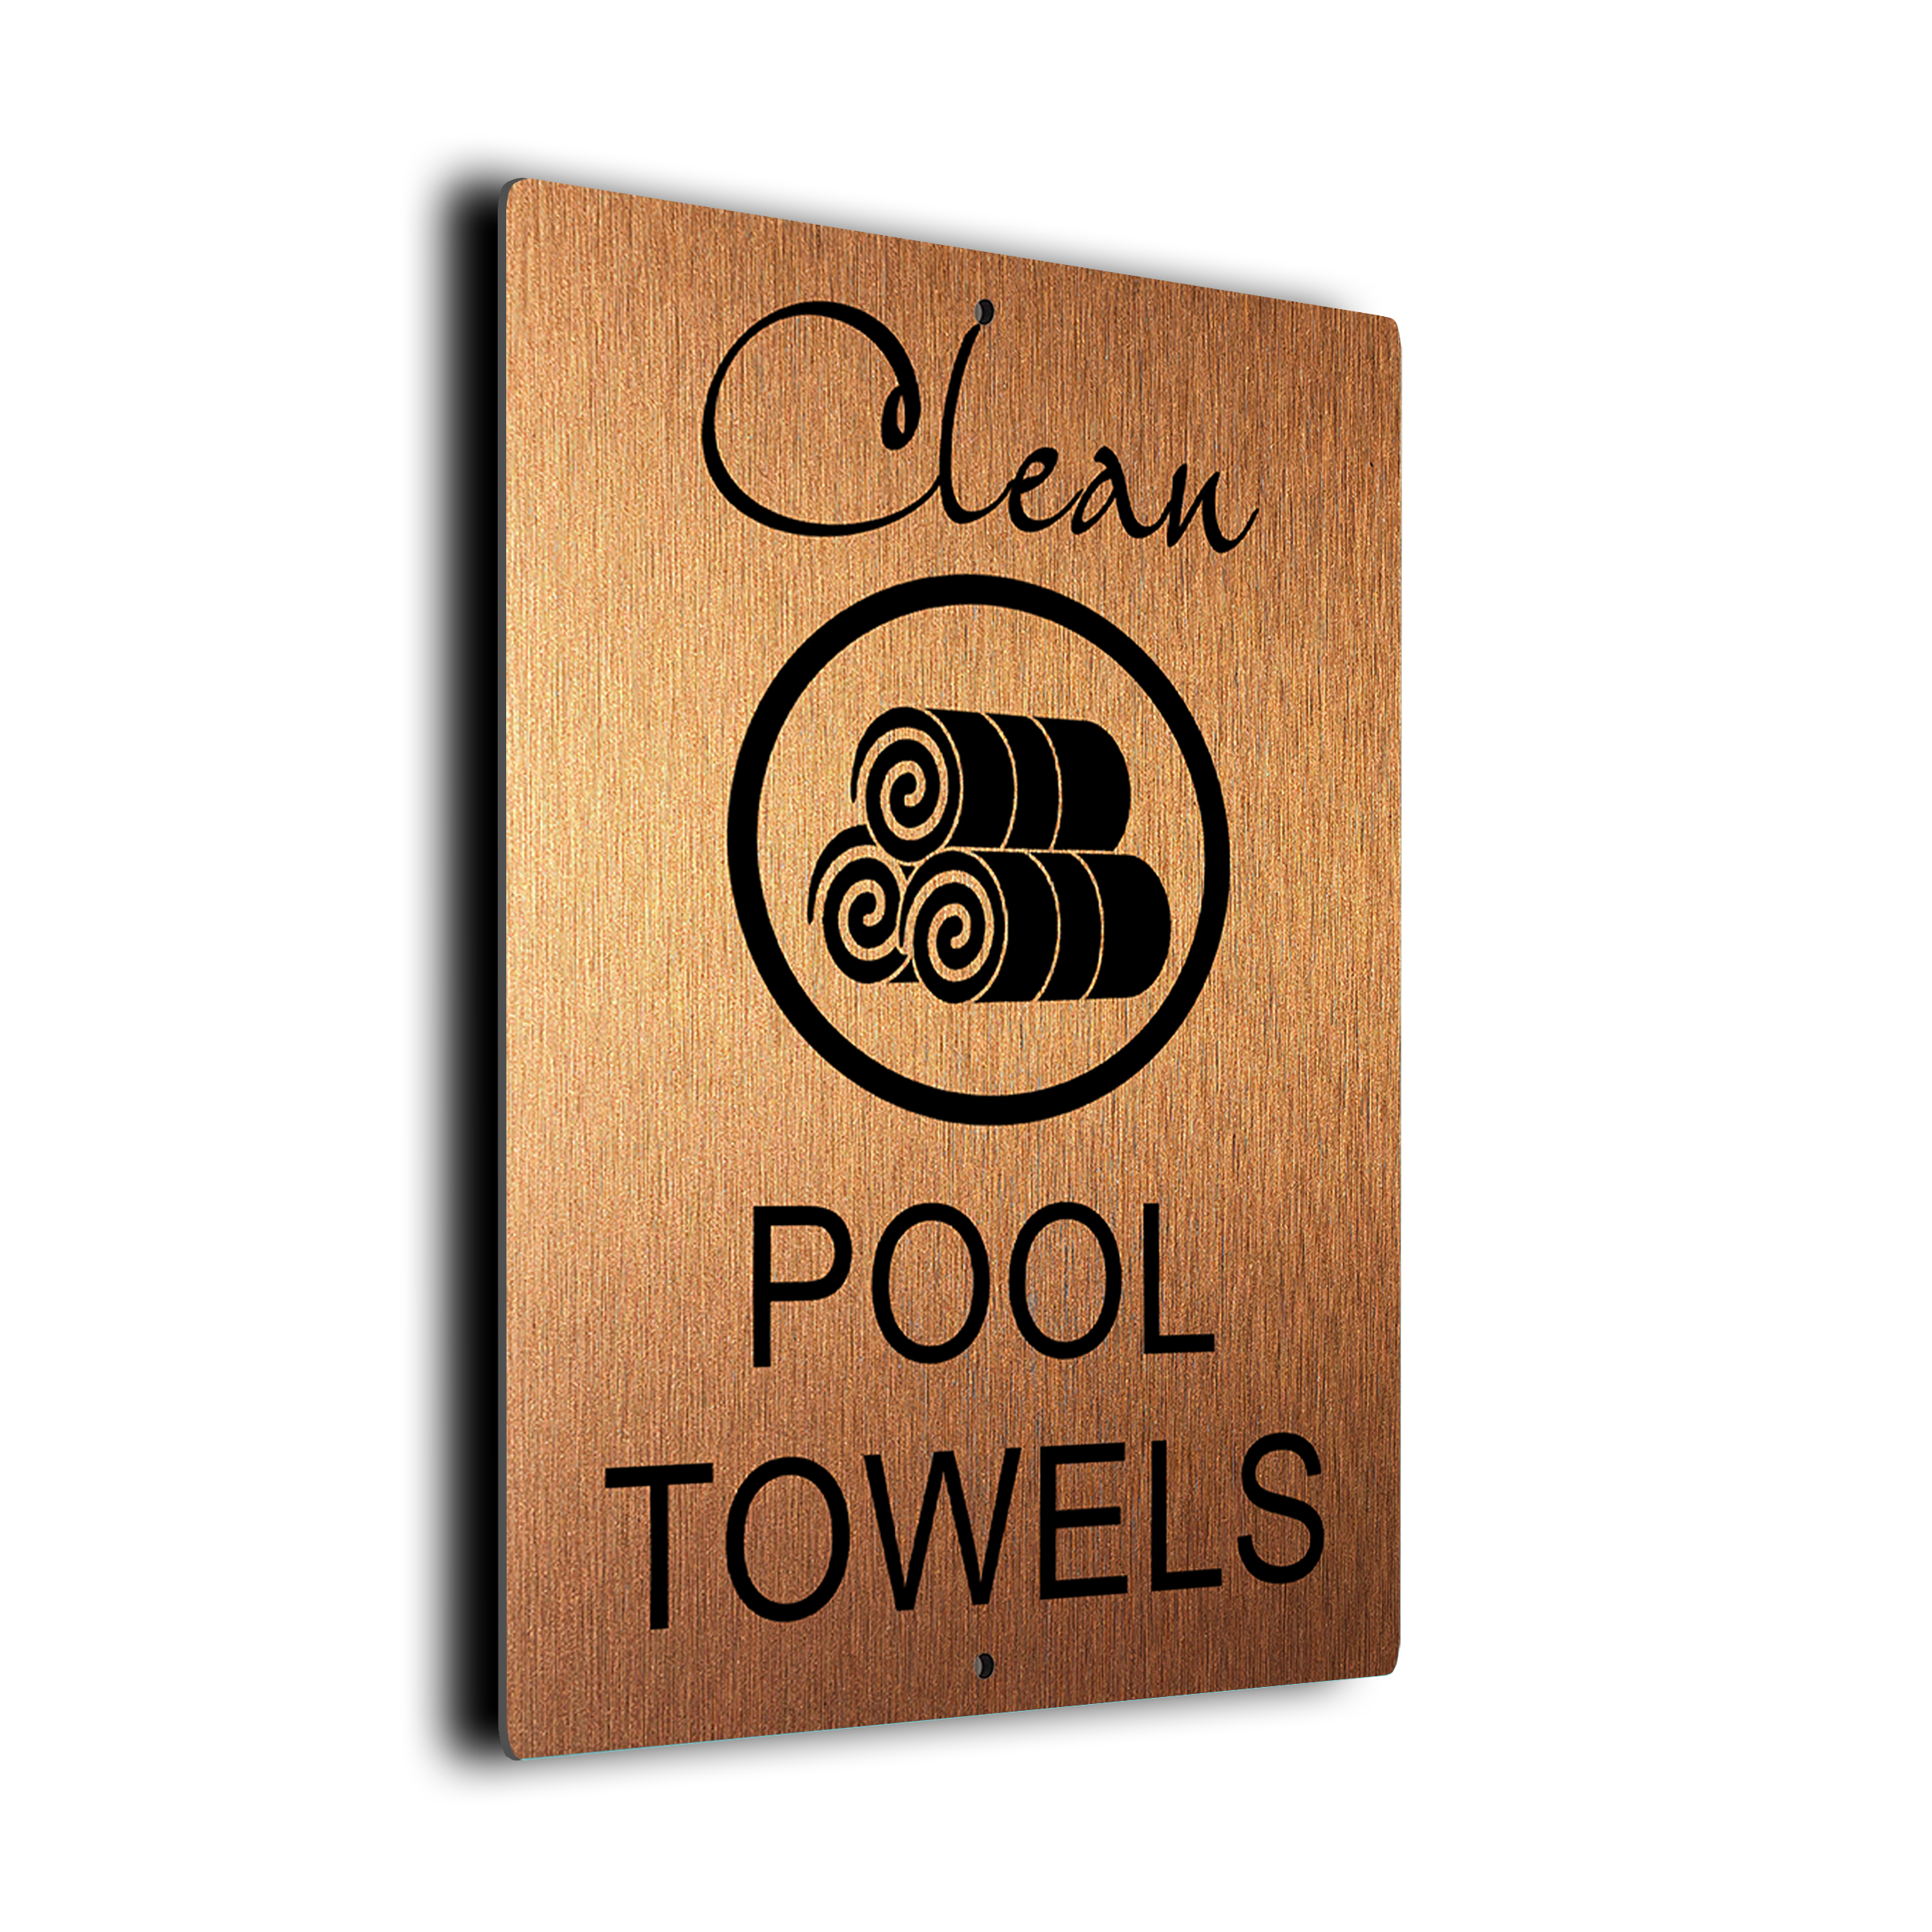 Pool Clean Pool Towels Sign